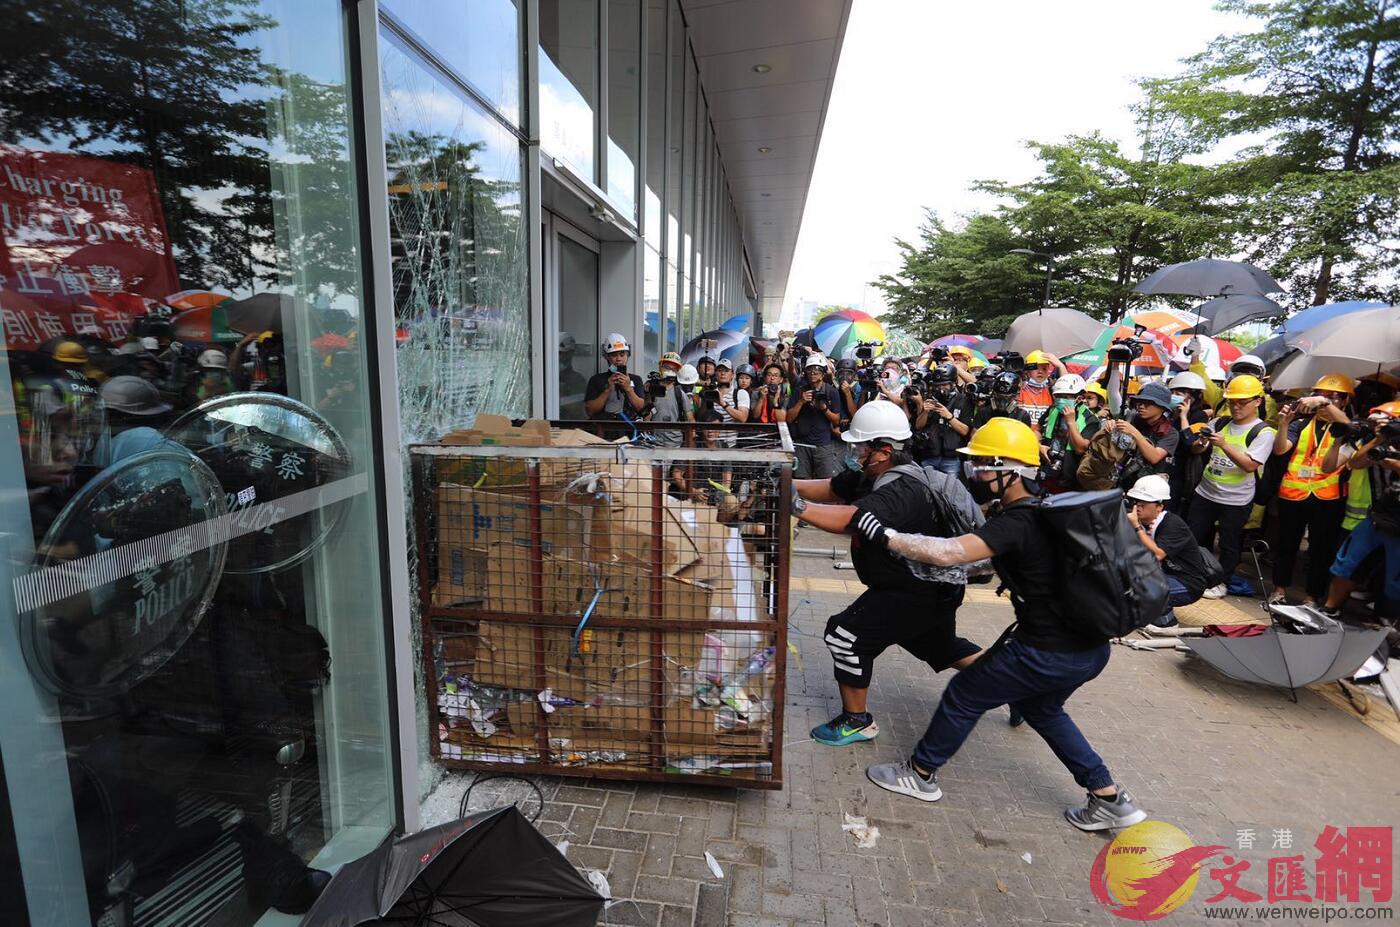 7月1日A立法會大樓遭到暴力衝擊C(大公文匯全媒體記者李斯哲攝)